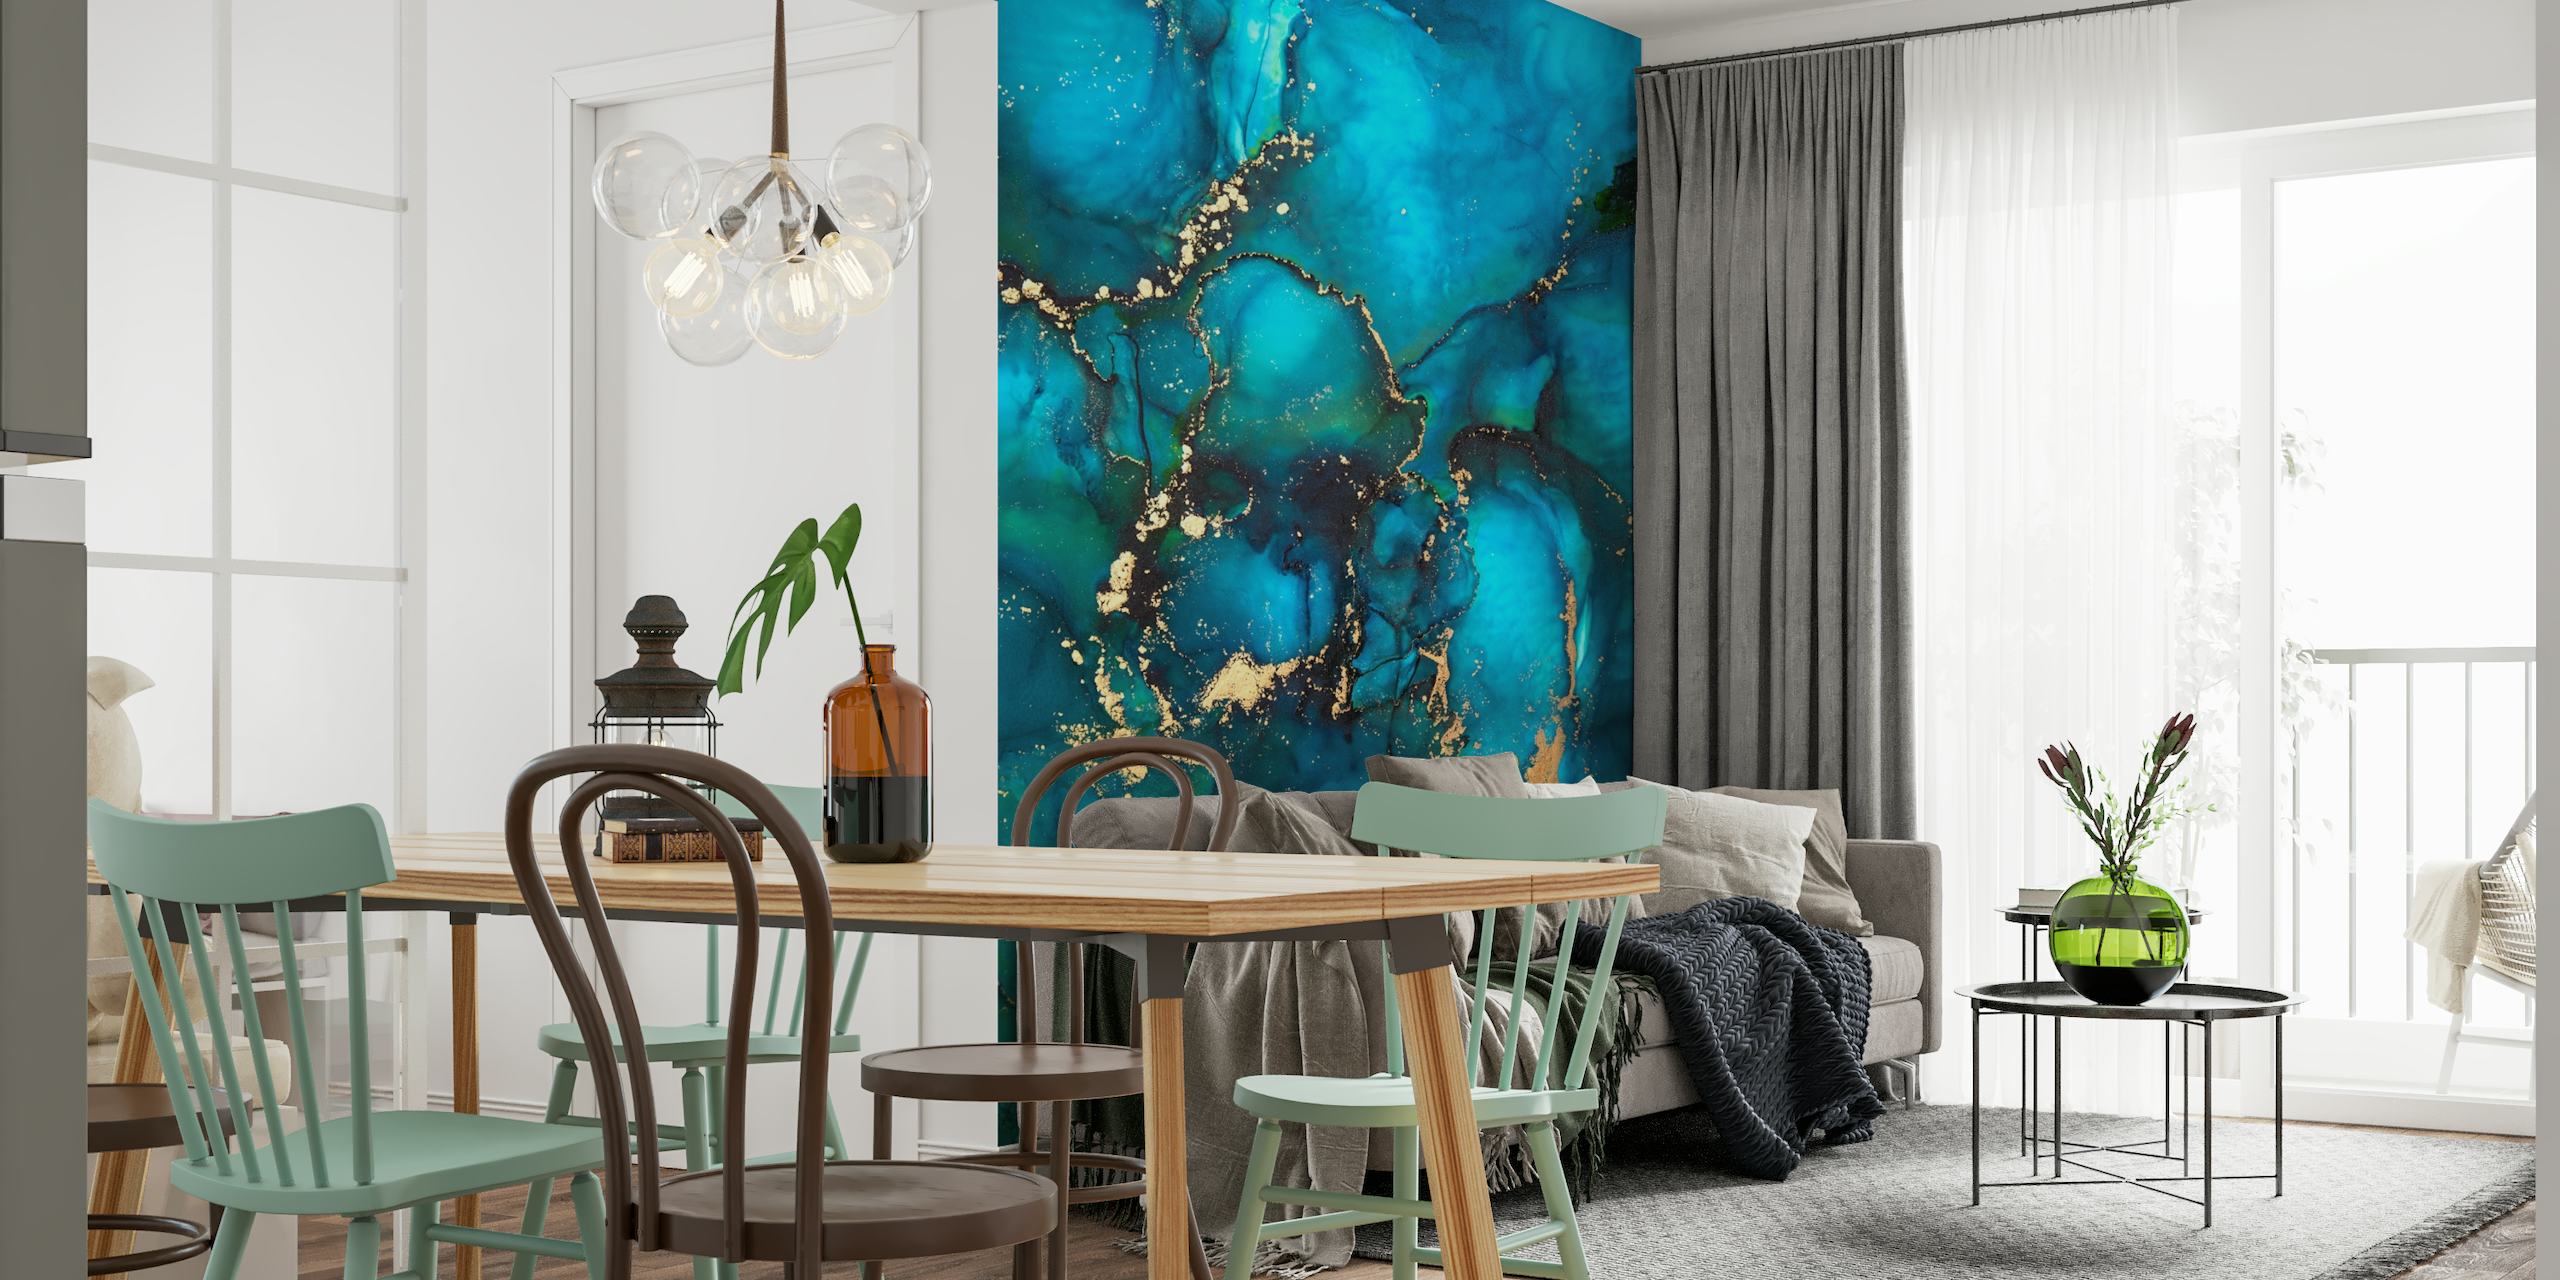 Zidna slika inspirirana apstraktnom lagunom s plavim i zlatnim tonovima